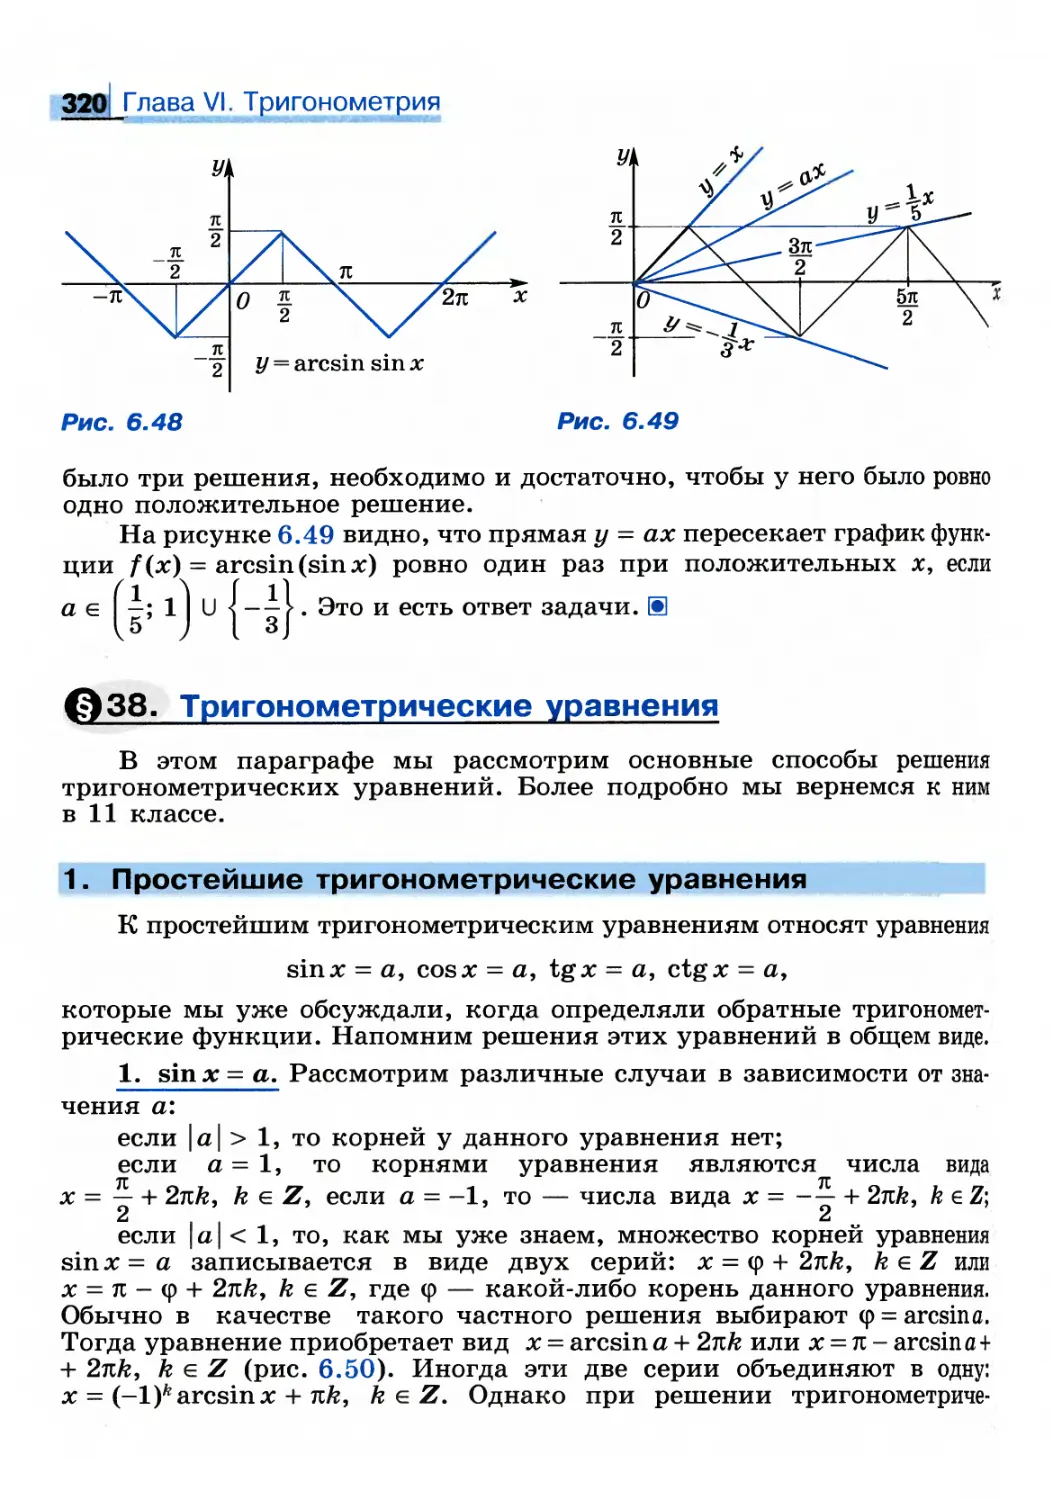 § 38. Тригонометрические уравнения